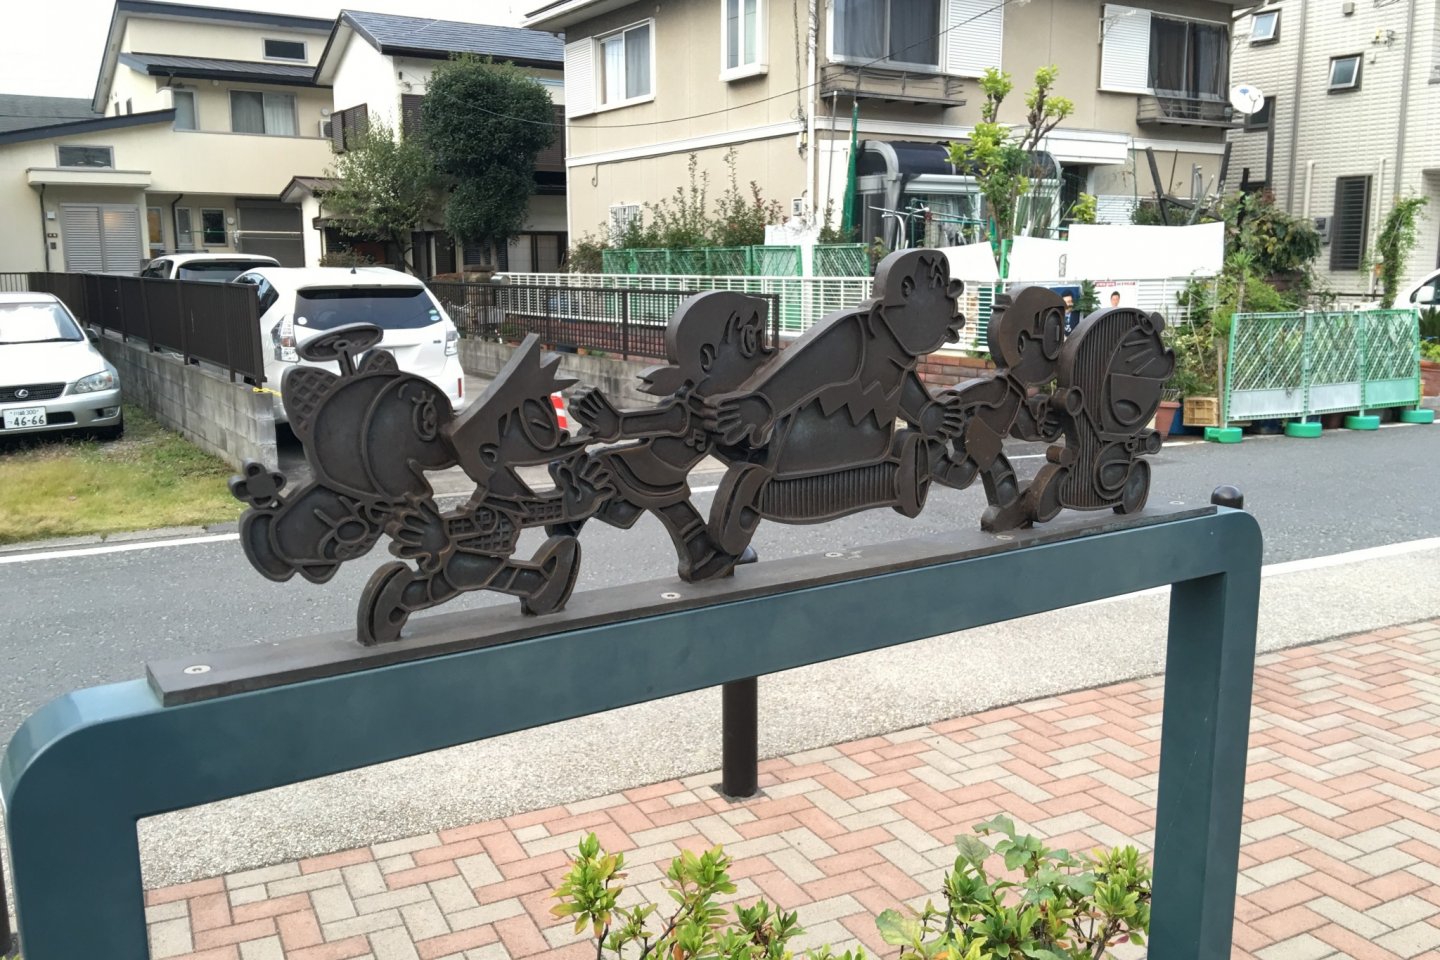 Anda akan menemukan papan petunjuk dekoratif ini ketika berjalan menuju museum dari Stasiun Mukogaokayuen menyusuri kanal.